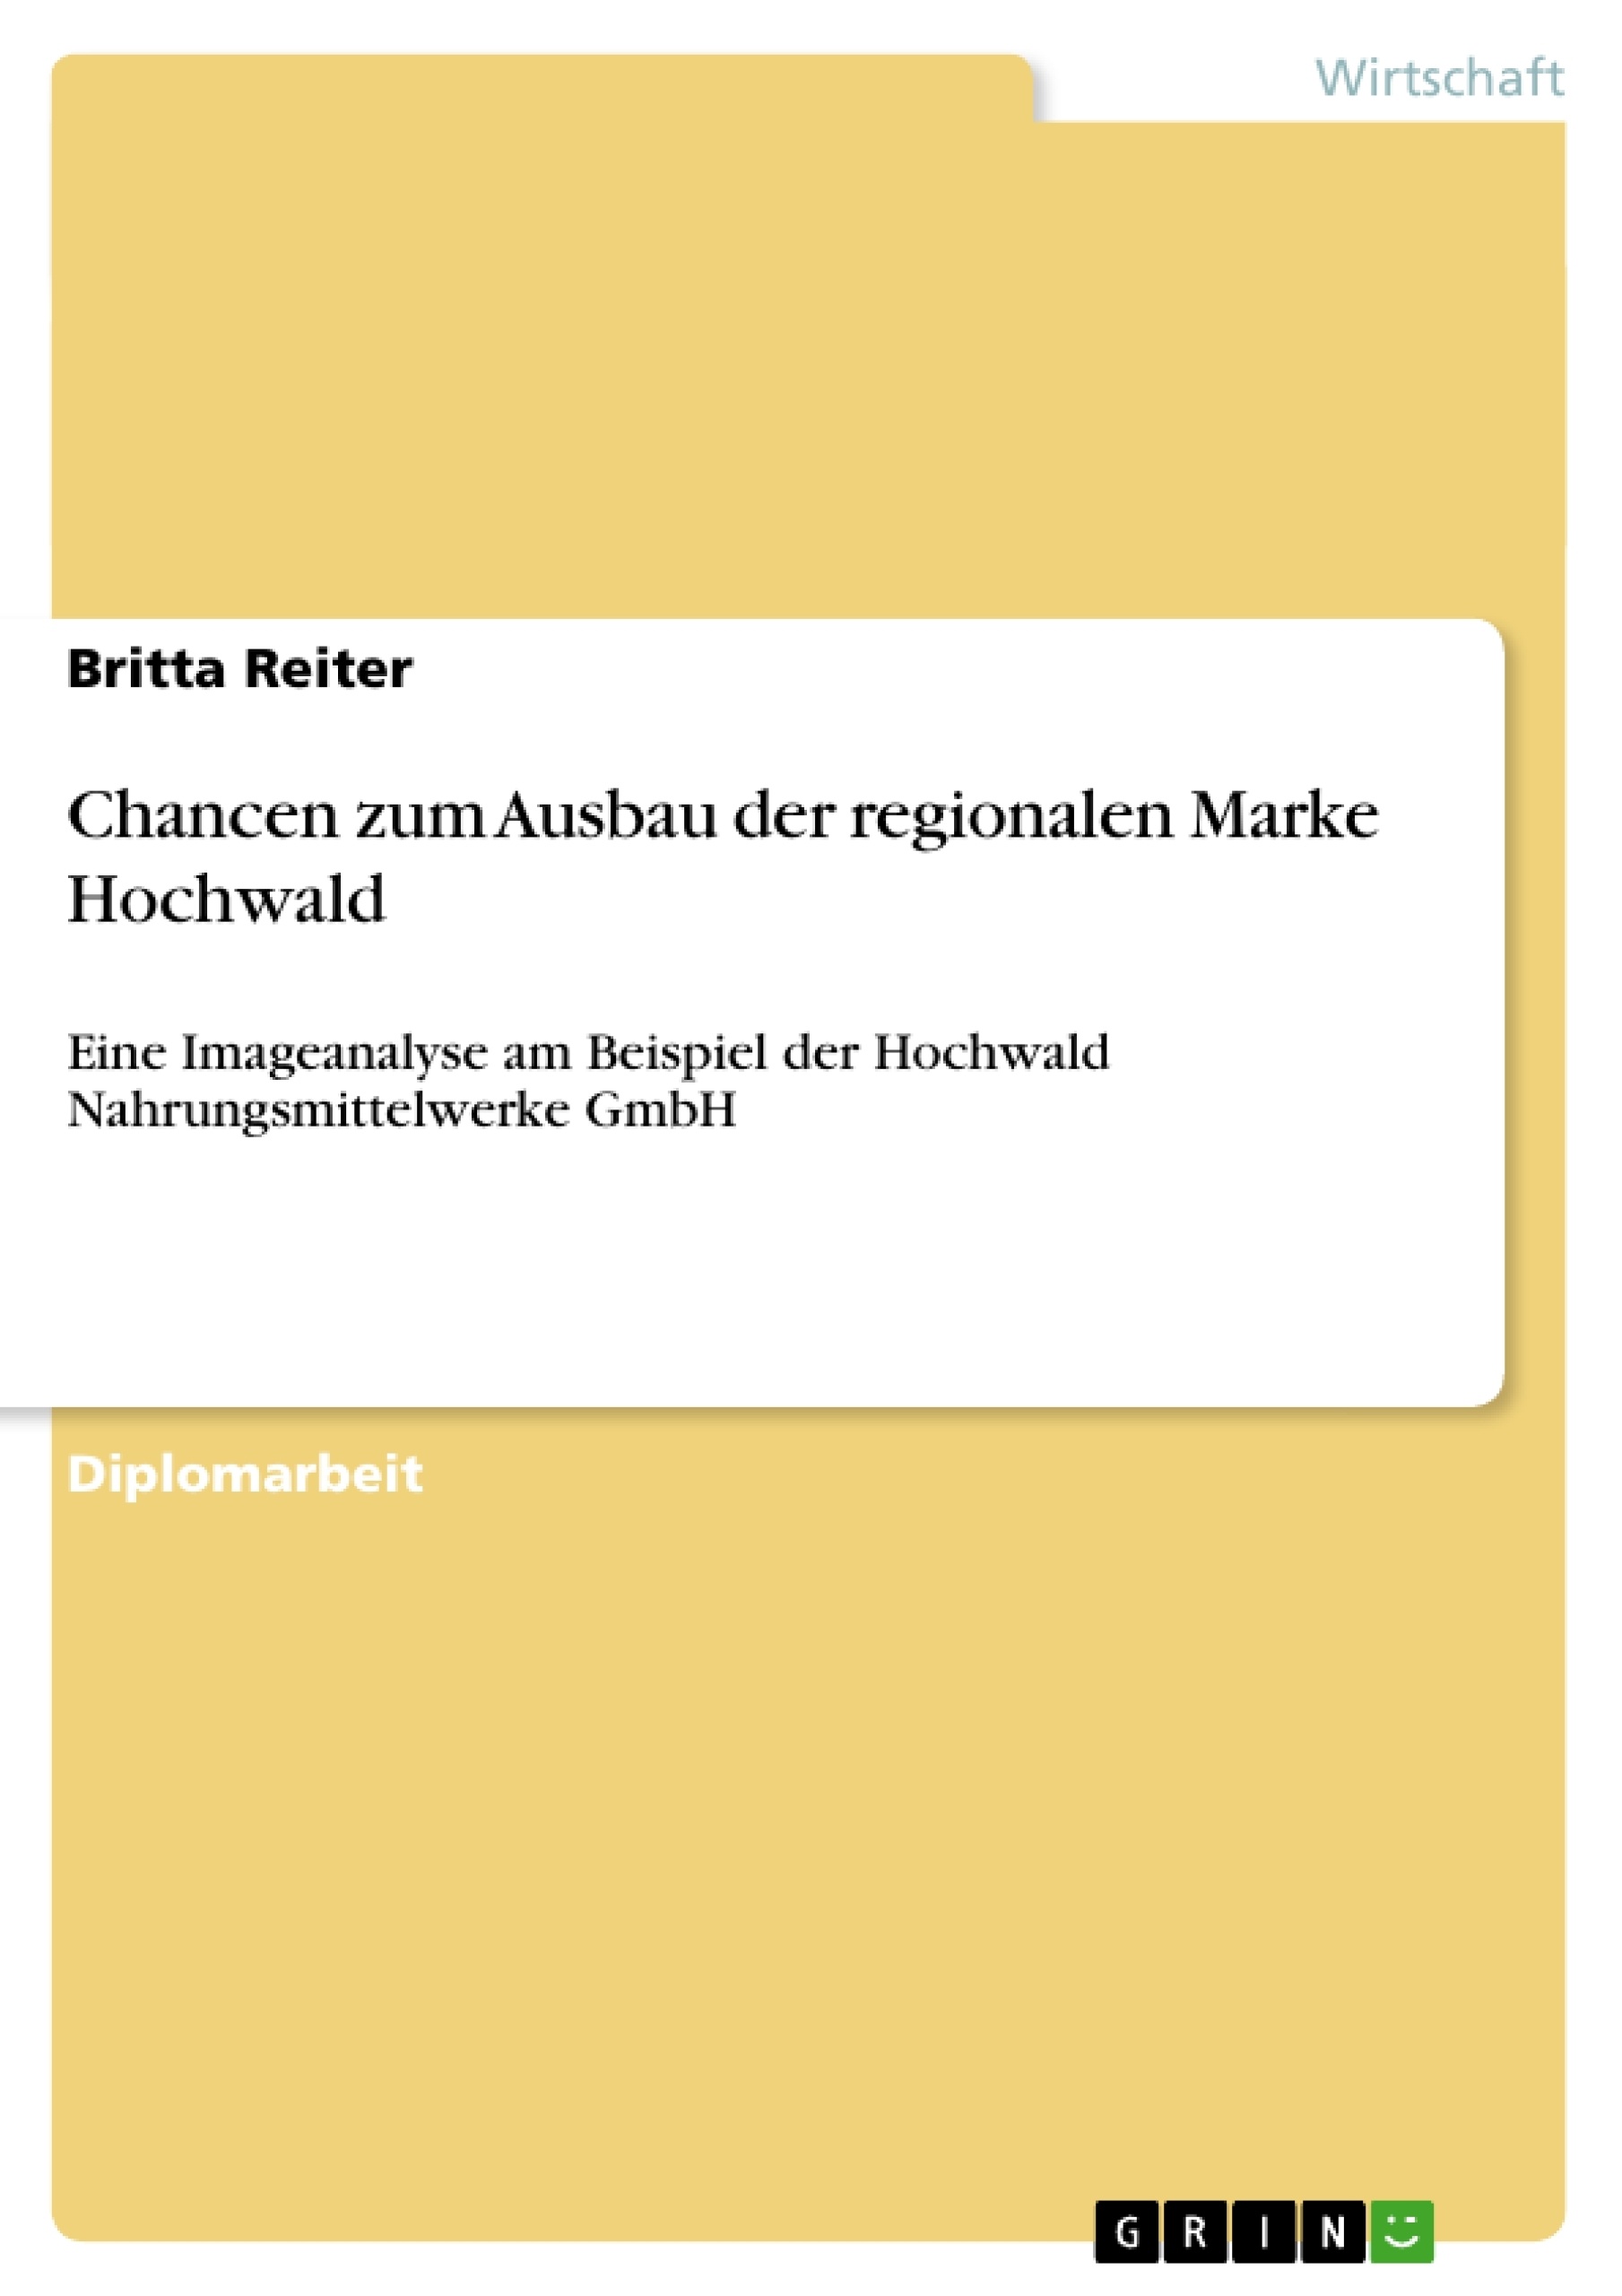 Title: Chancen zum Ausbau der regionalen Marke Hochwald